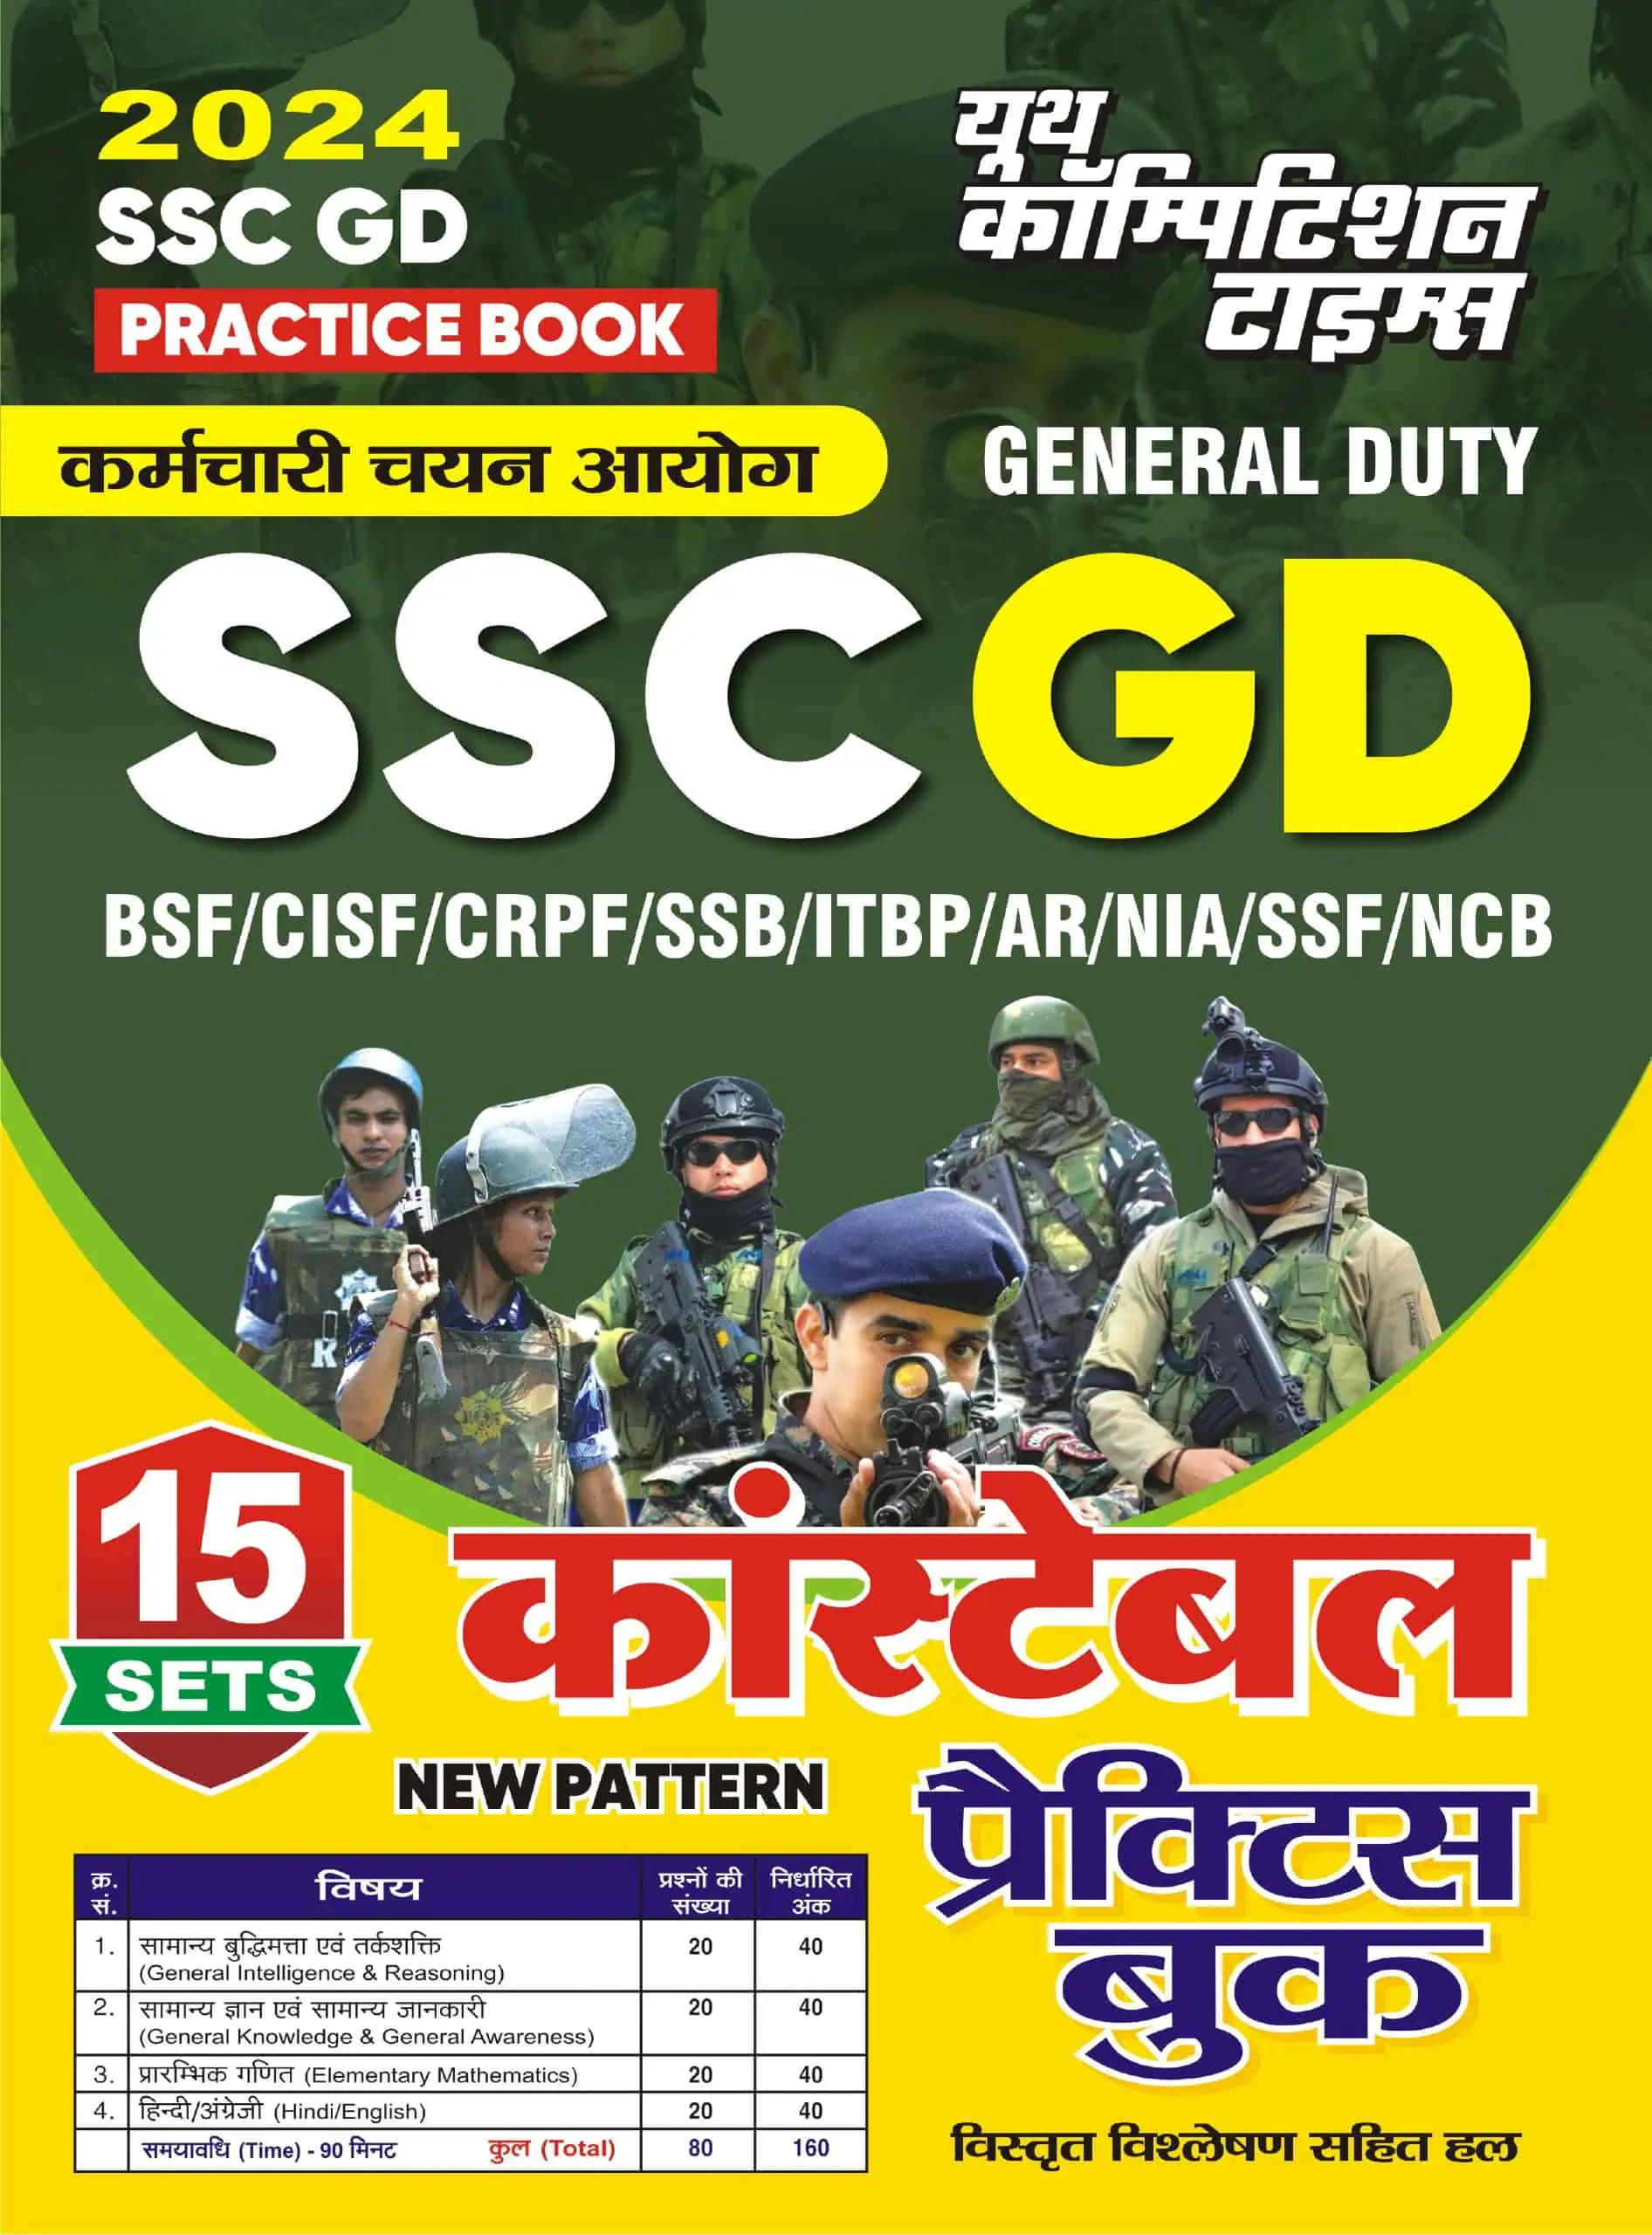 YCT SSC GD PRACTICE BOOK 2024 PDF [Hindi Medium]